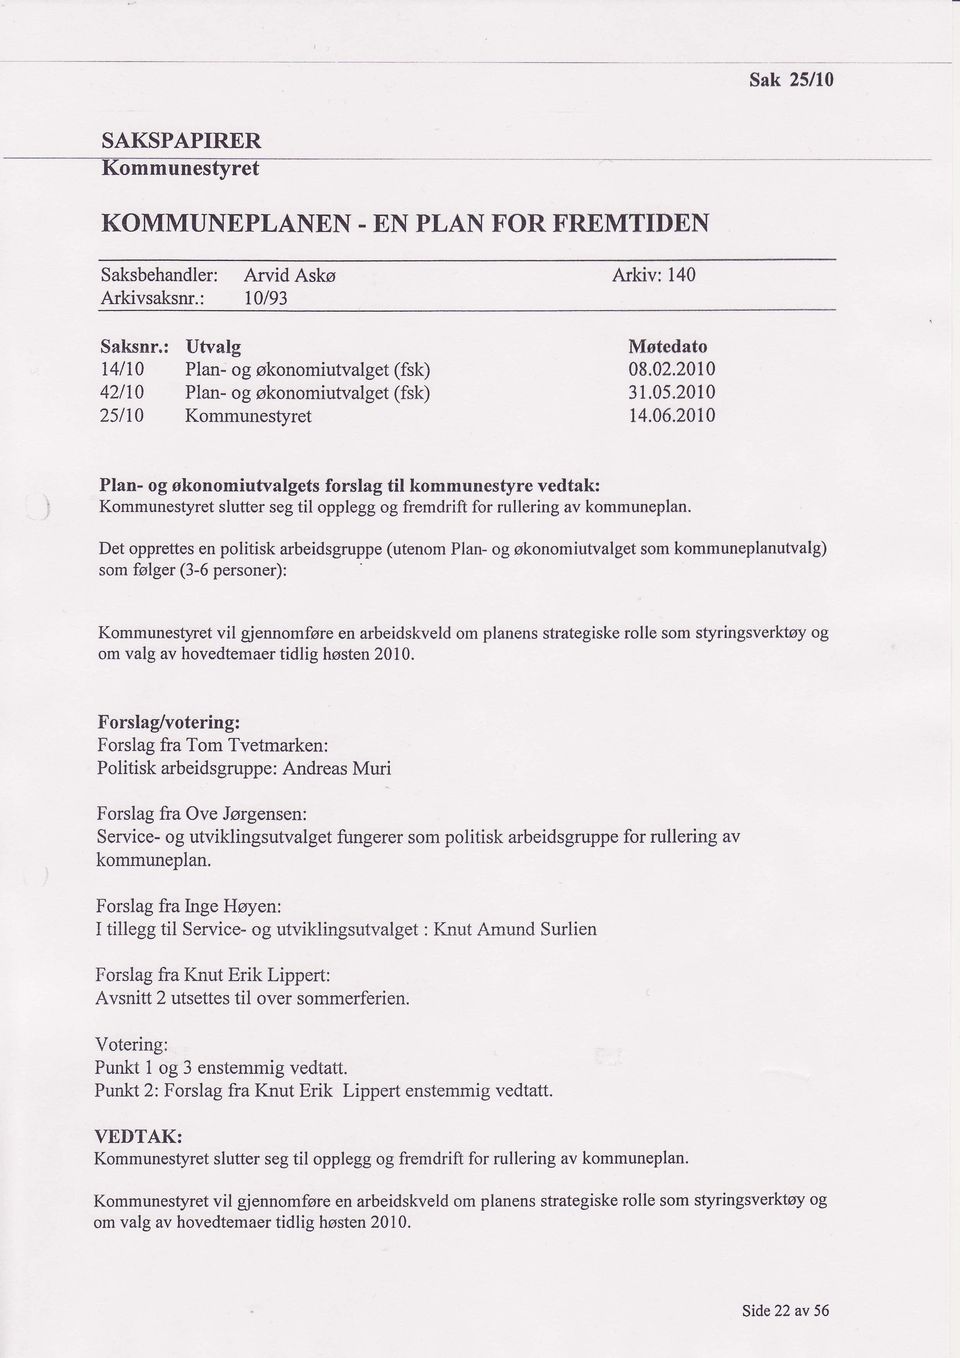 2010 ' Plan- og okonomiutvalgets forslag til kommunestyre vedtak: Det opprettes en politisk arbeidsgruppe (utenom Plan- og skonomiutvalget som kommuneplanutvalg) som folger (3-6 personer):